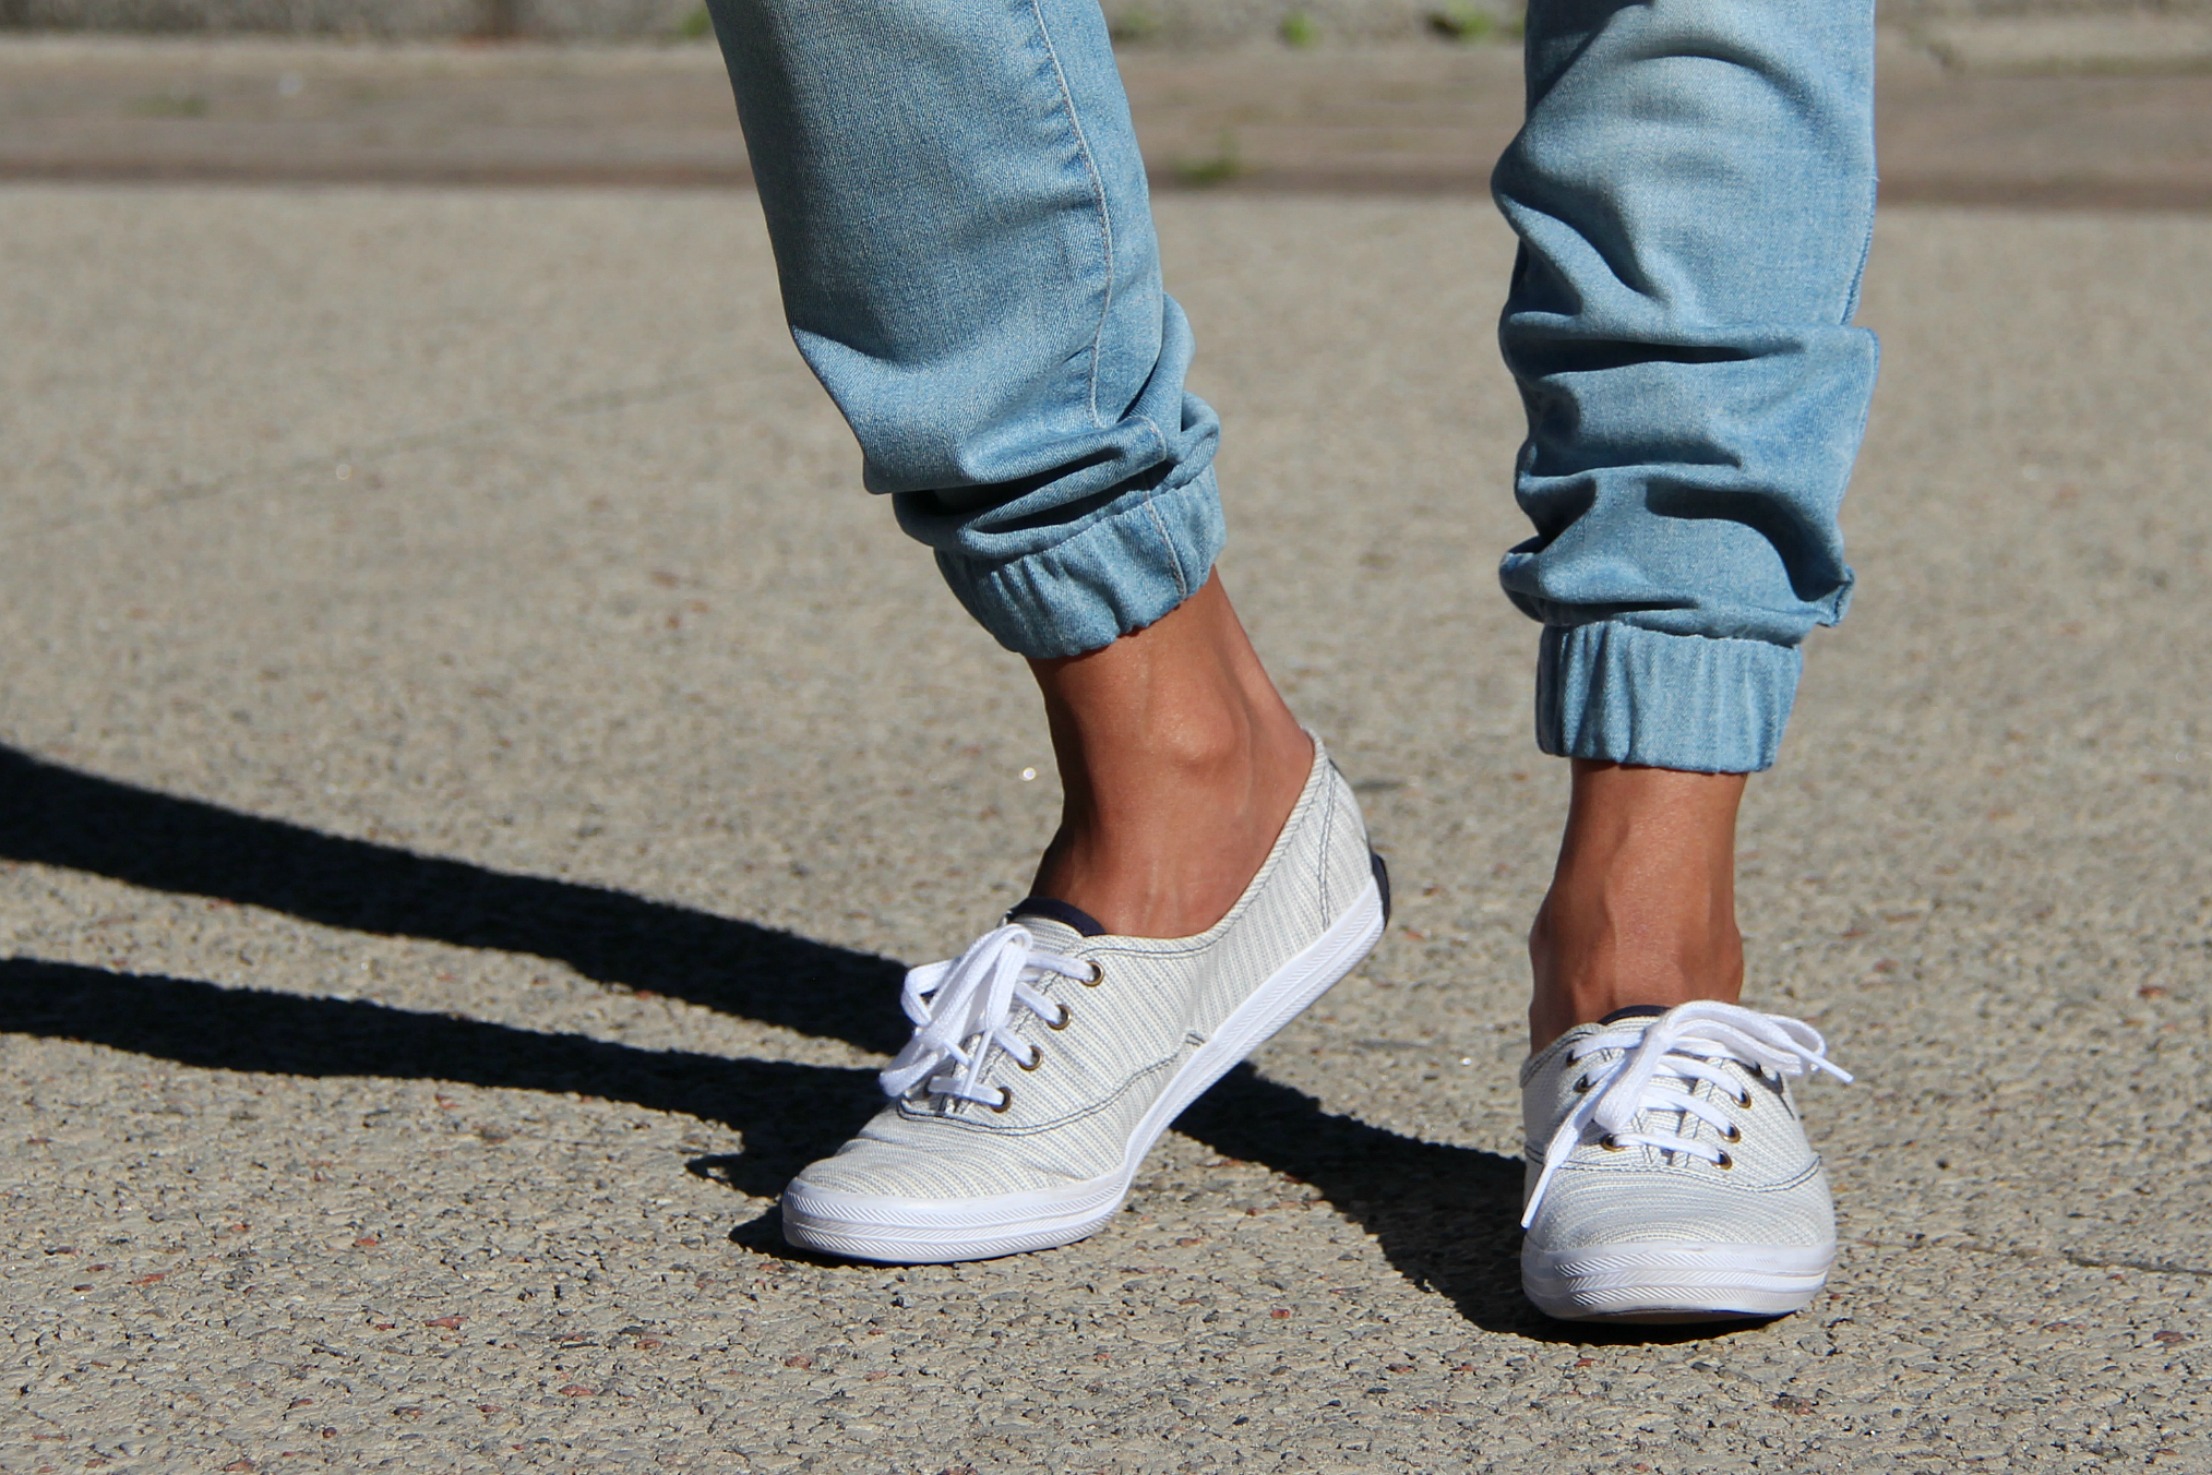 white jean jogger pants